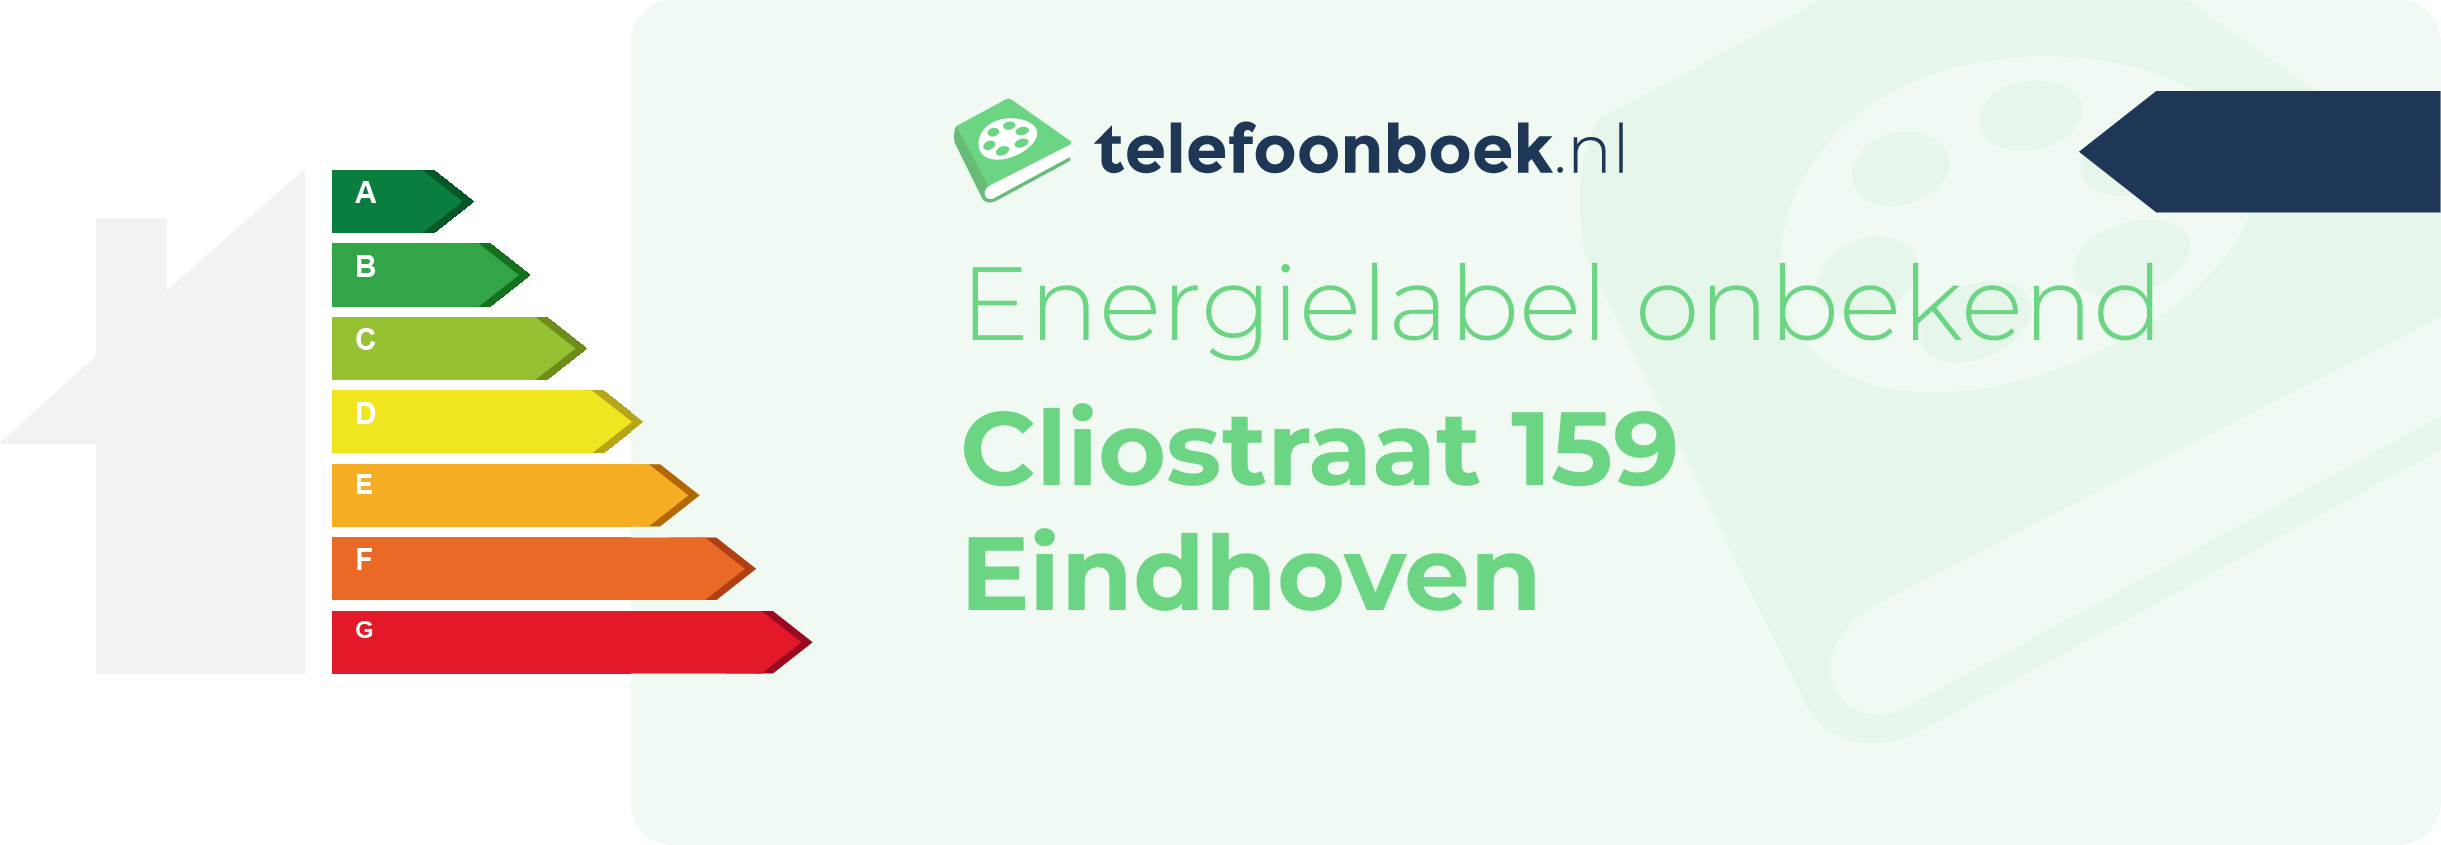 Energielabel Cliostraat 159 Eindhoven